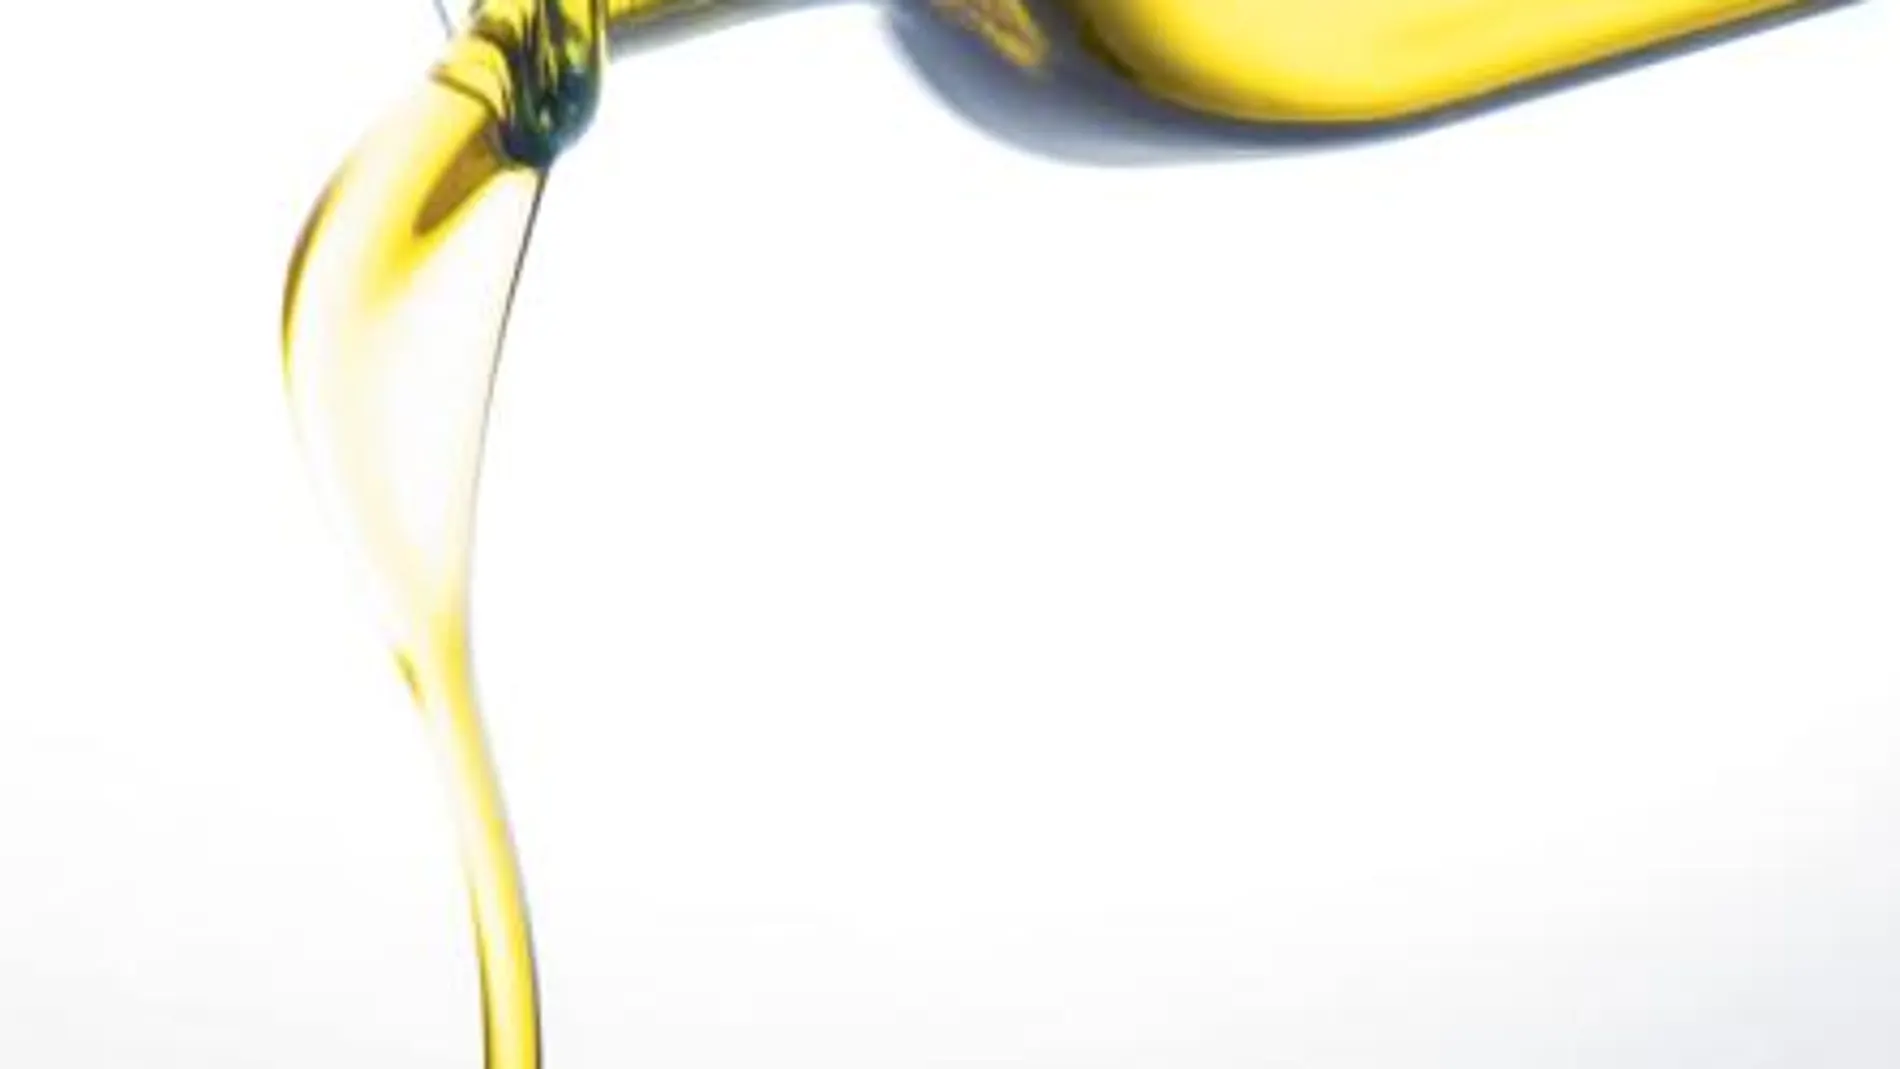 Europa avala los beneficios saludables del aceite de oliva